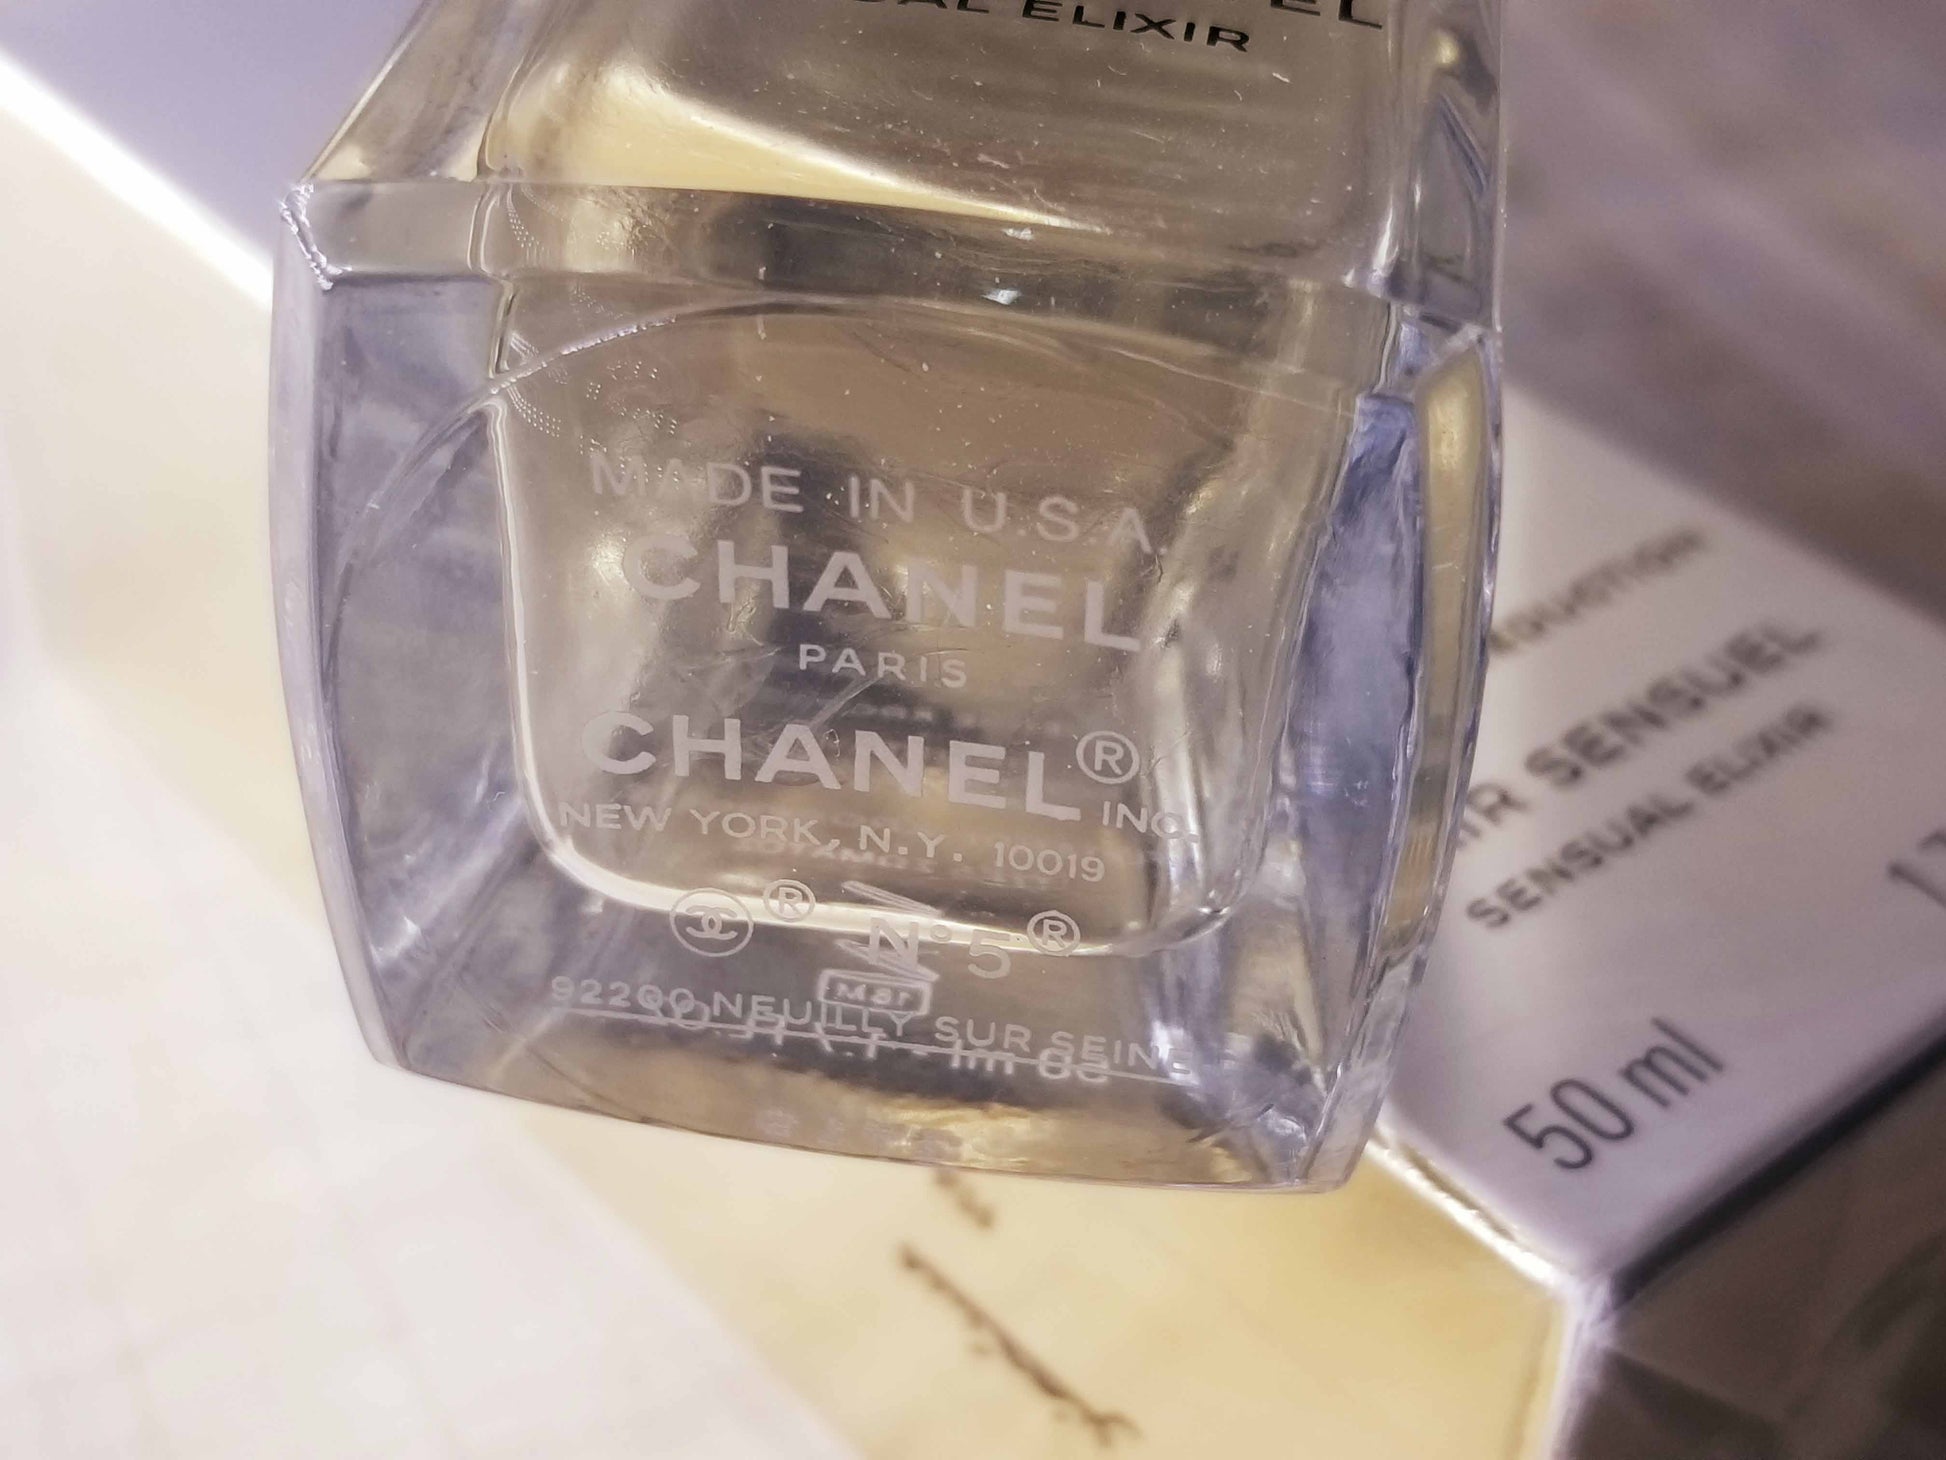 Chanel N5 Elixir Sensuel for women Fluid Body Gel 50 ml 1.7 oz